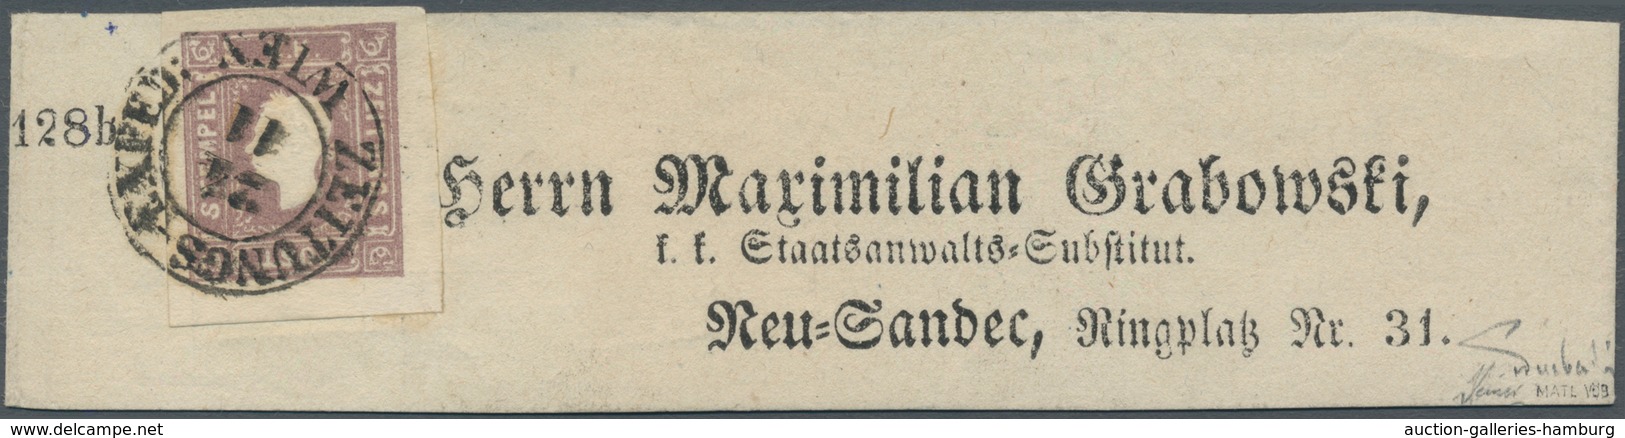 Österreich: 1859, (1,05 Kreuzer) Tiefdunkellila Zeitungsmarke, Type II, Farbfrisch, Allseits Breit- - Nuevos